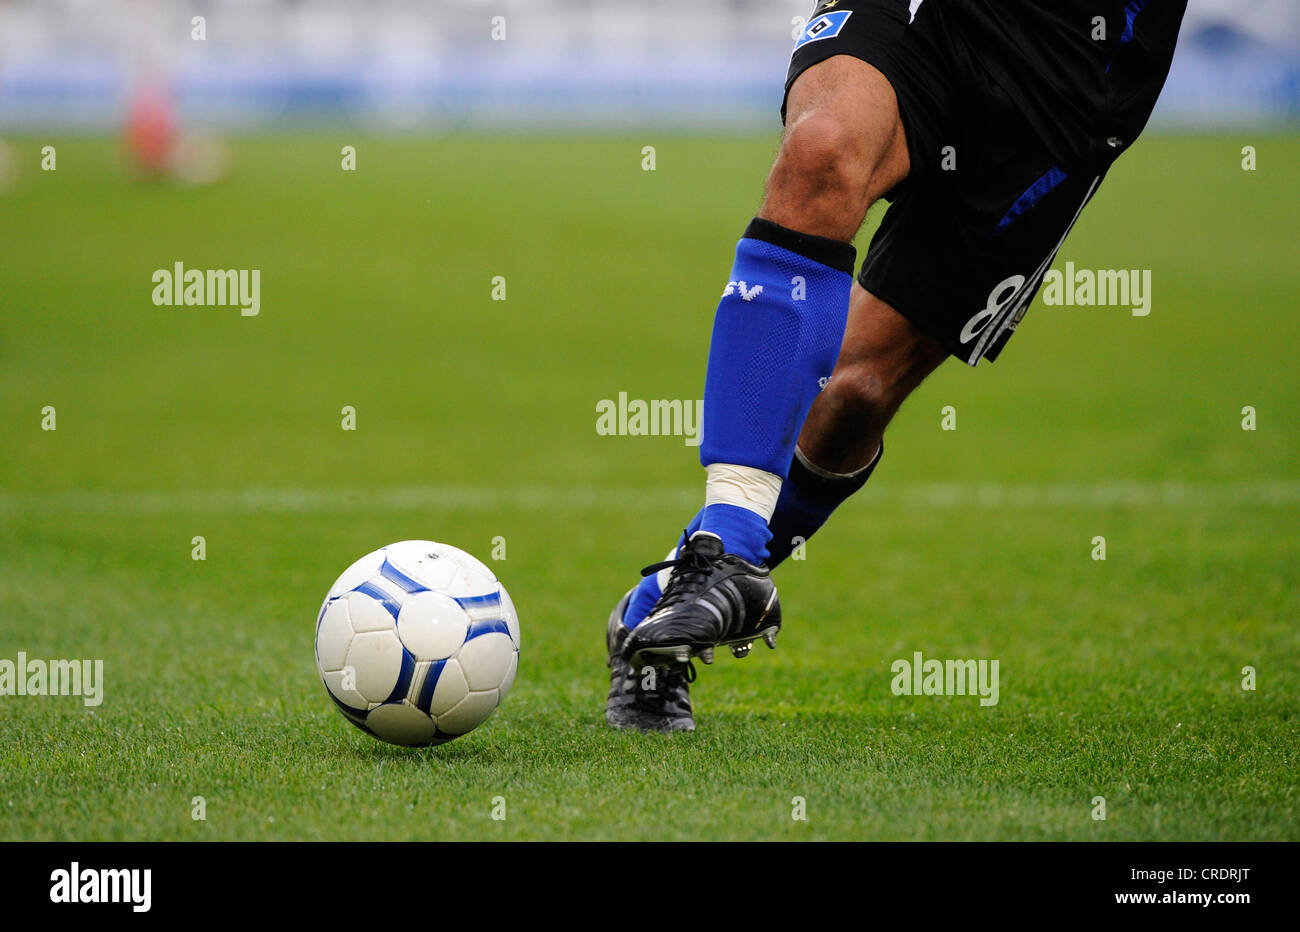 Les jambes d'un joueur de football et le football Banque D'Images